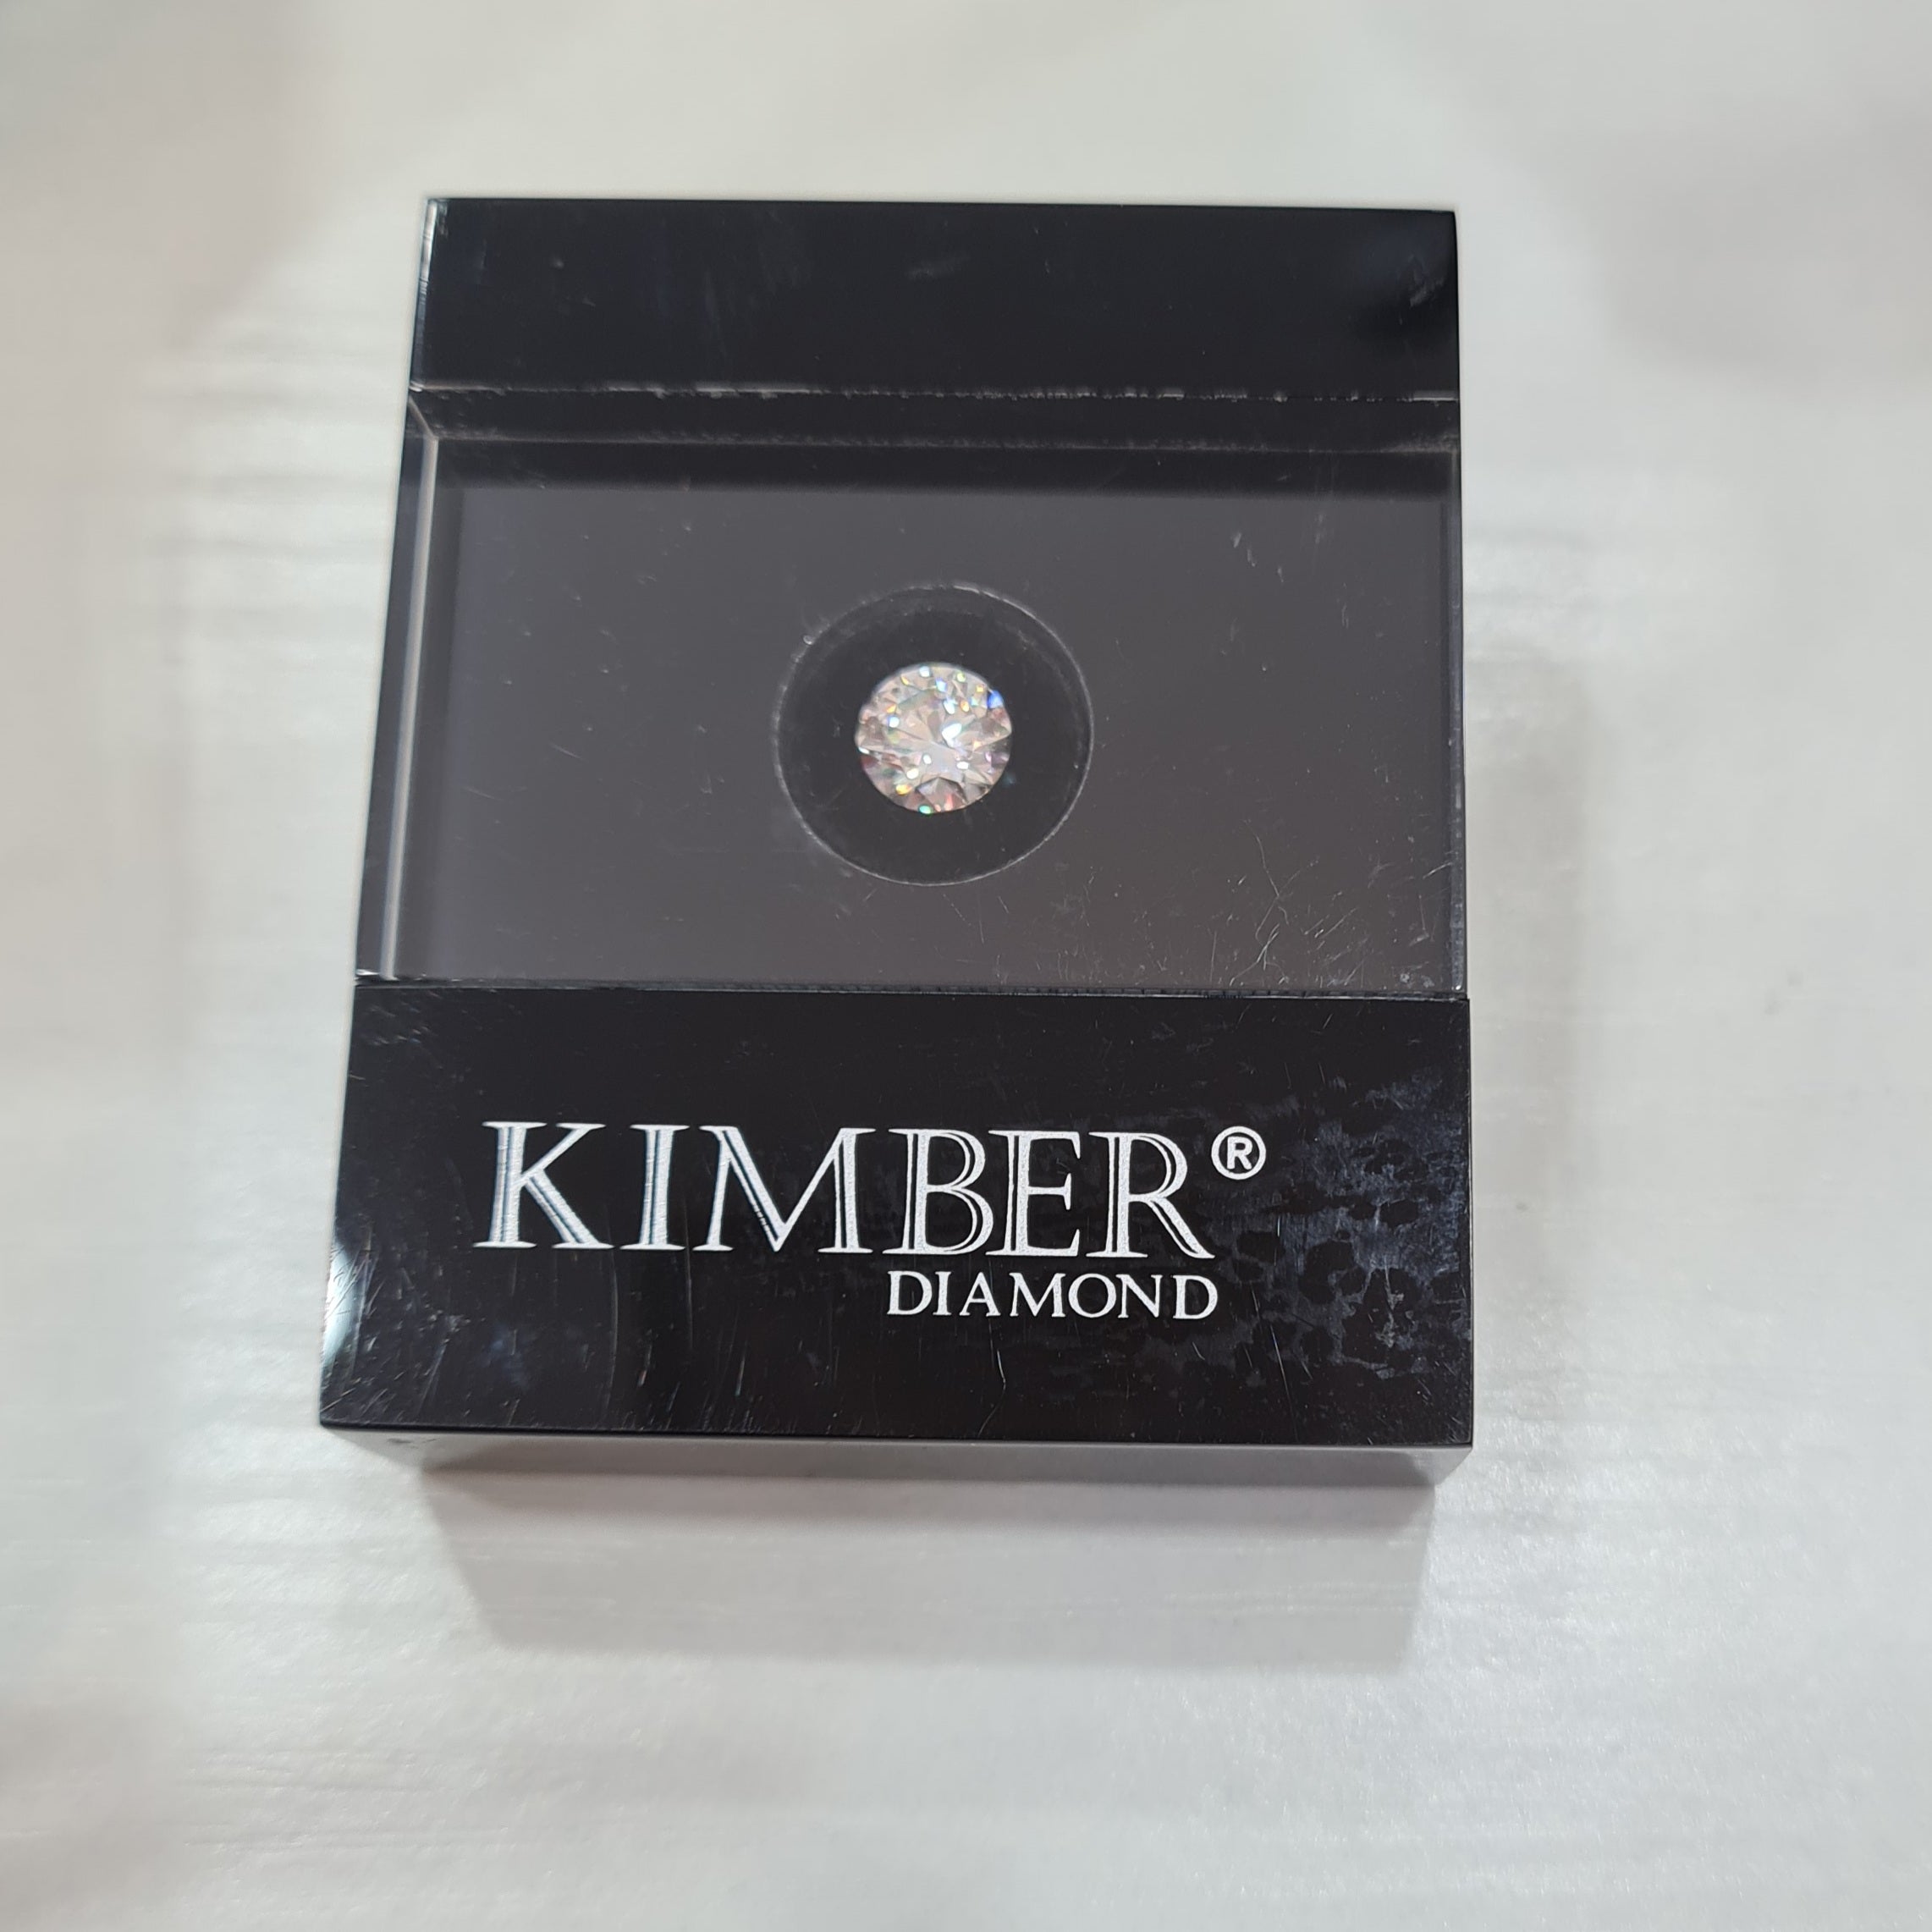 1.51 carats Kimber Diamond